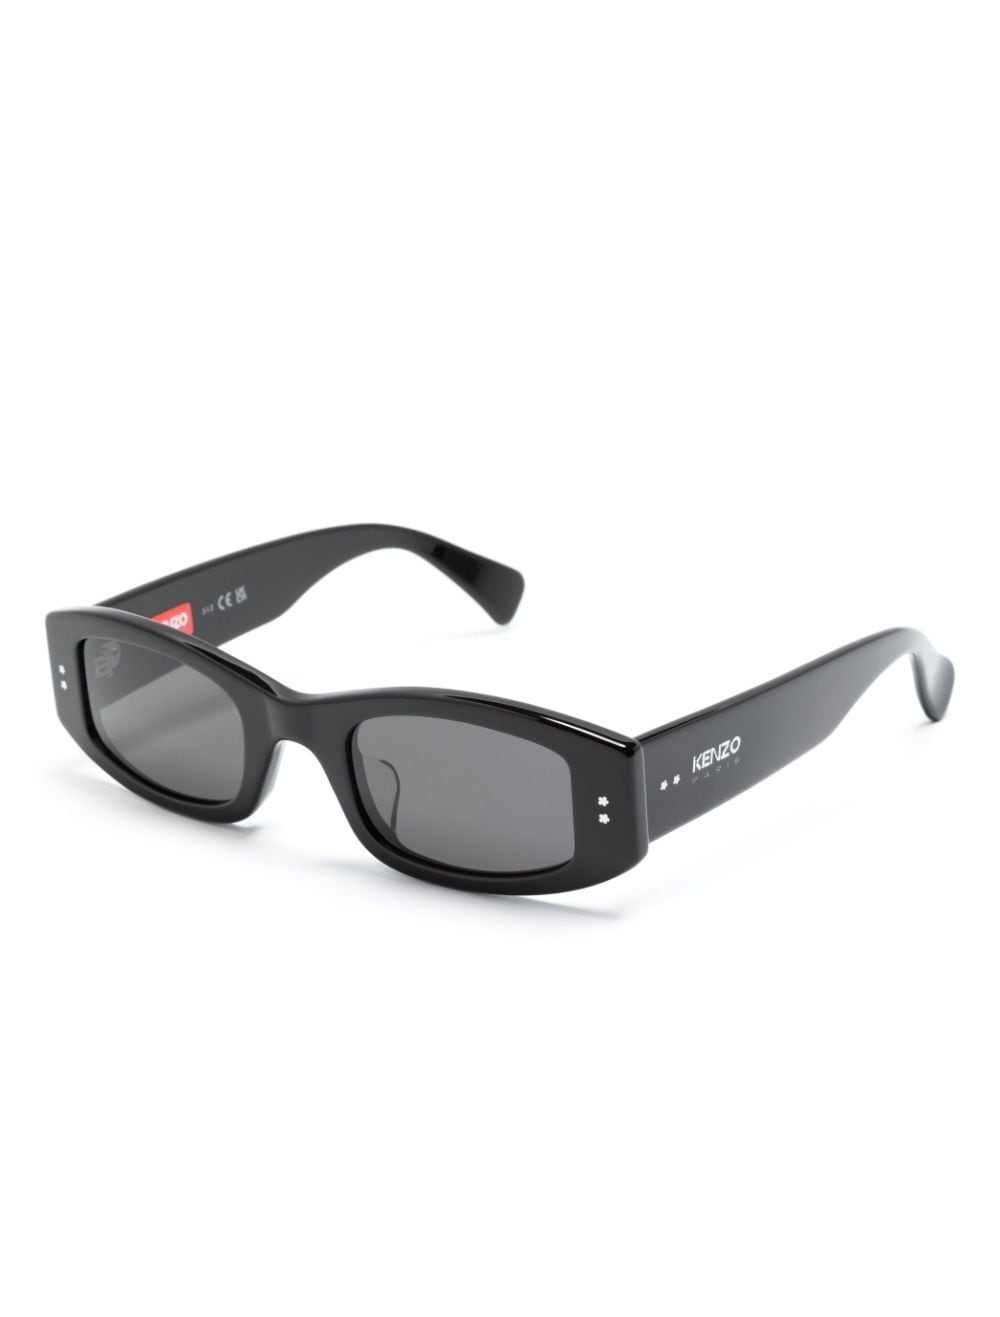 Kenzo KZ40166U zonnebril met rechthoekig montuur - Zwart